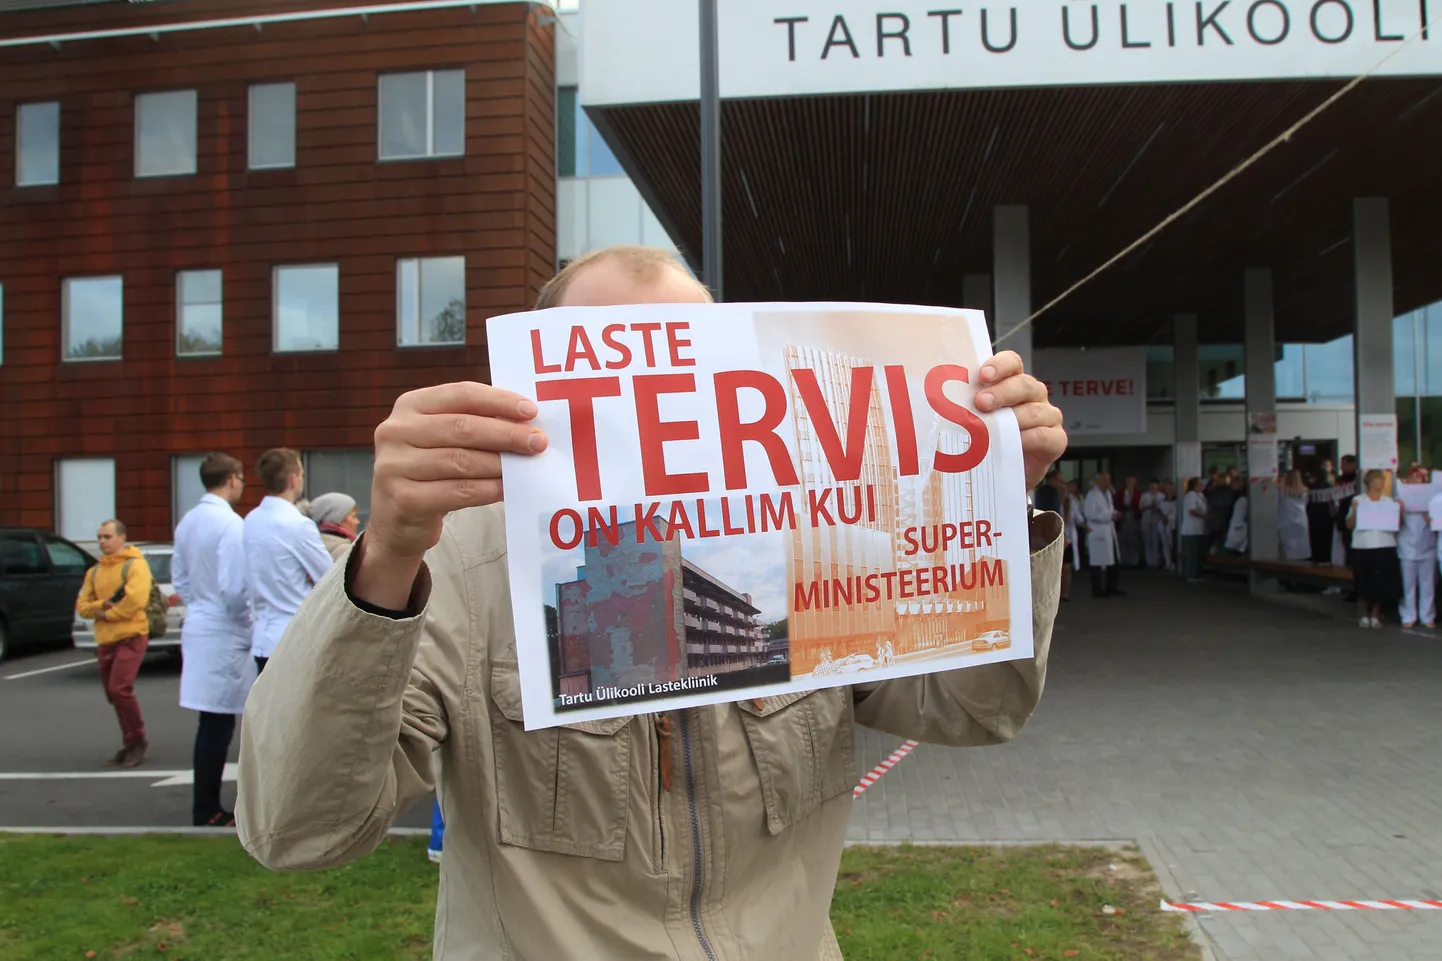 В сентябре прошла предупредительная забастовка медиков, которой требовали дополнительные средства для здравоохранения Эстонии.